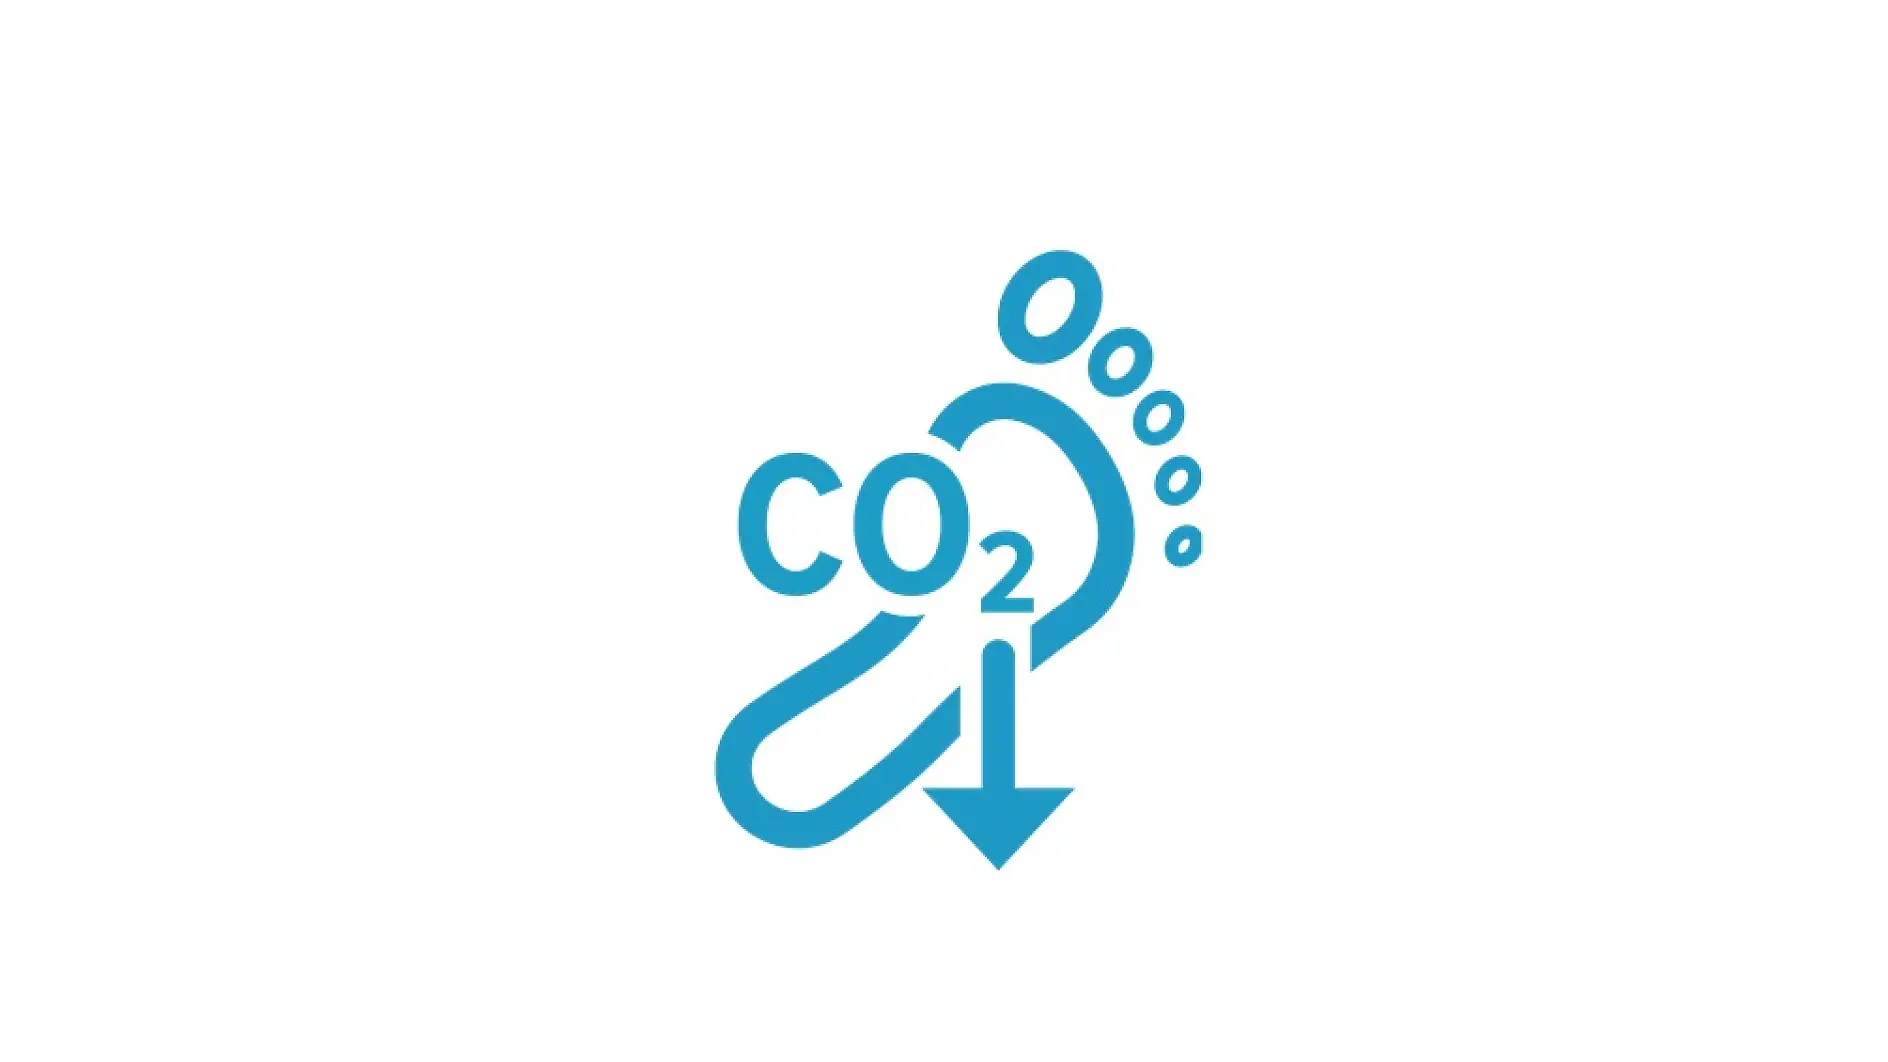 Lavere CO2-aftryk sammenlignet med standard-pakketape